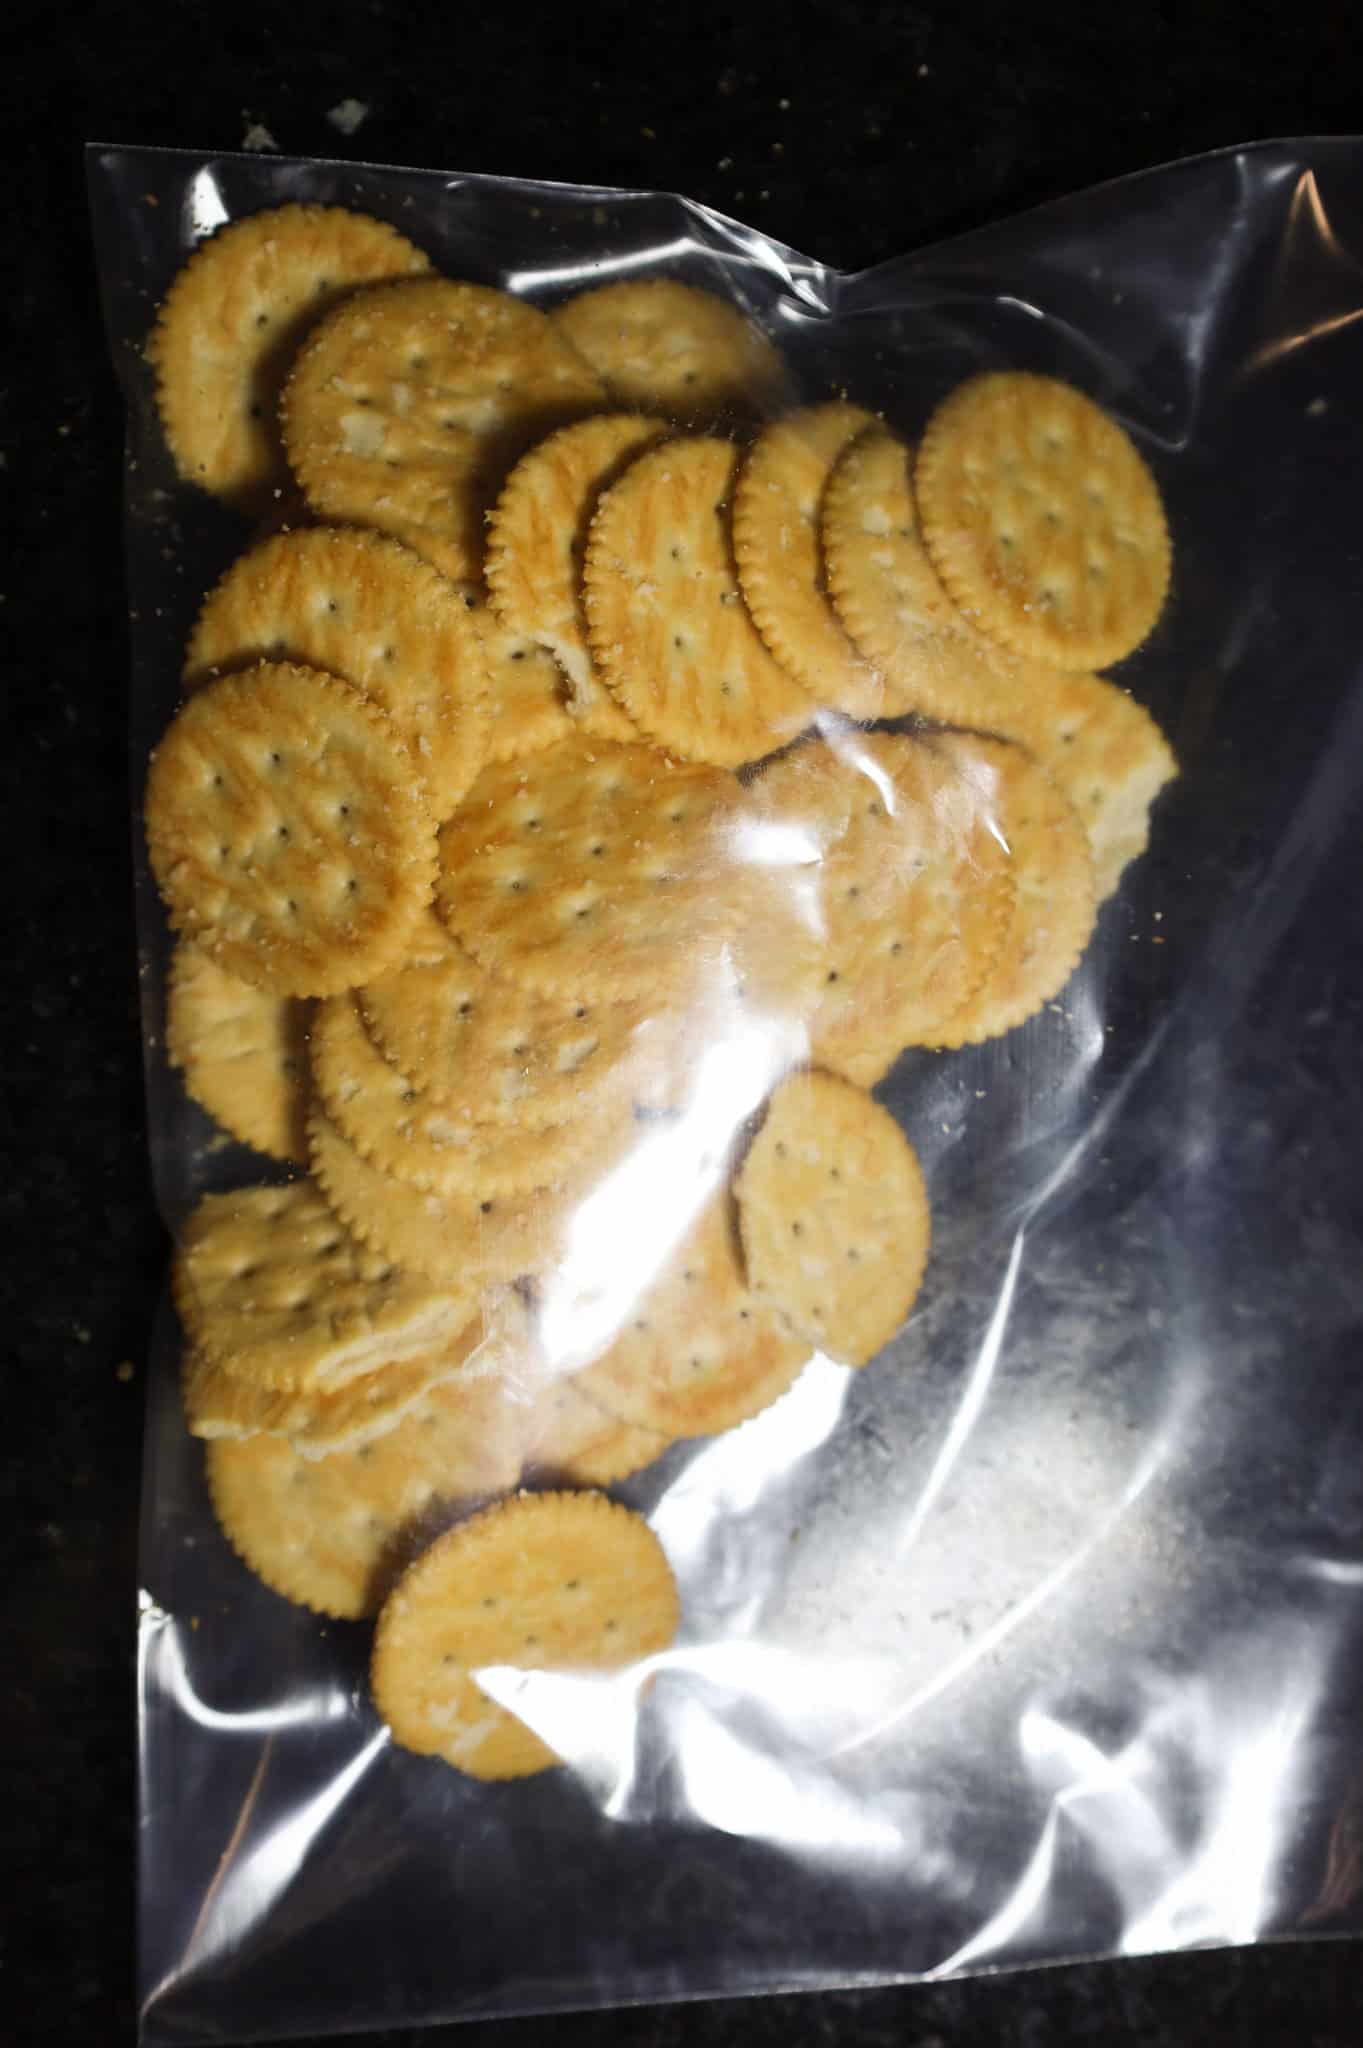 ritz crackers in a Ziploc bag